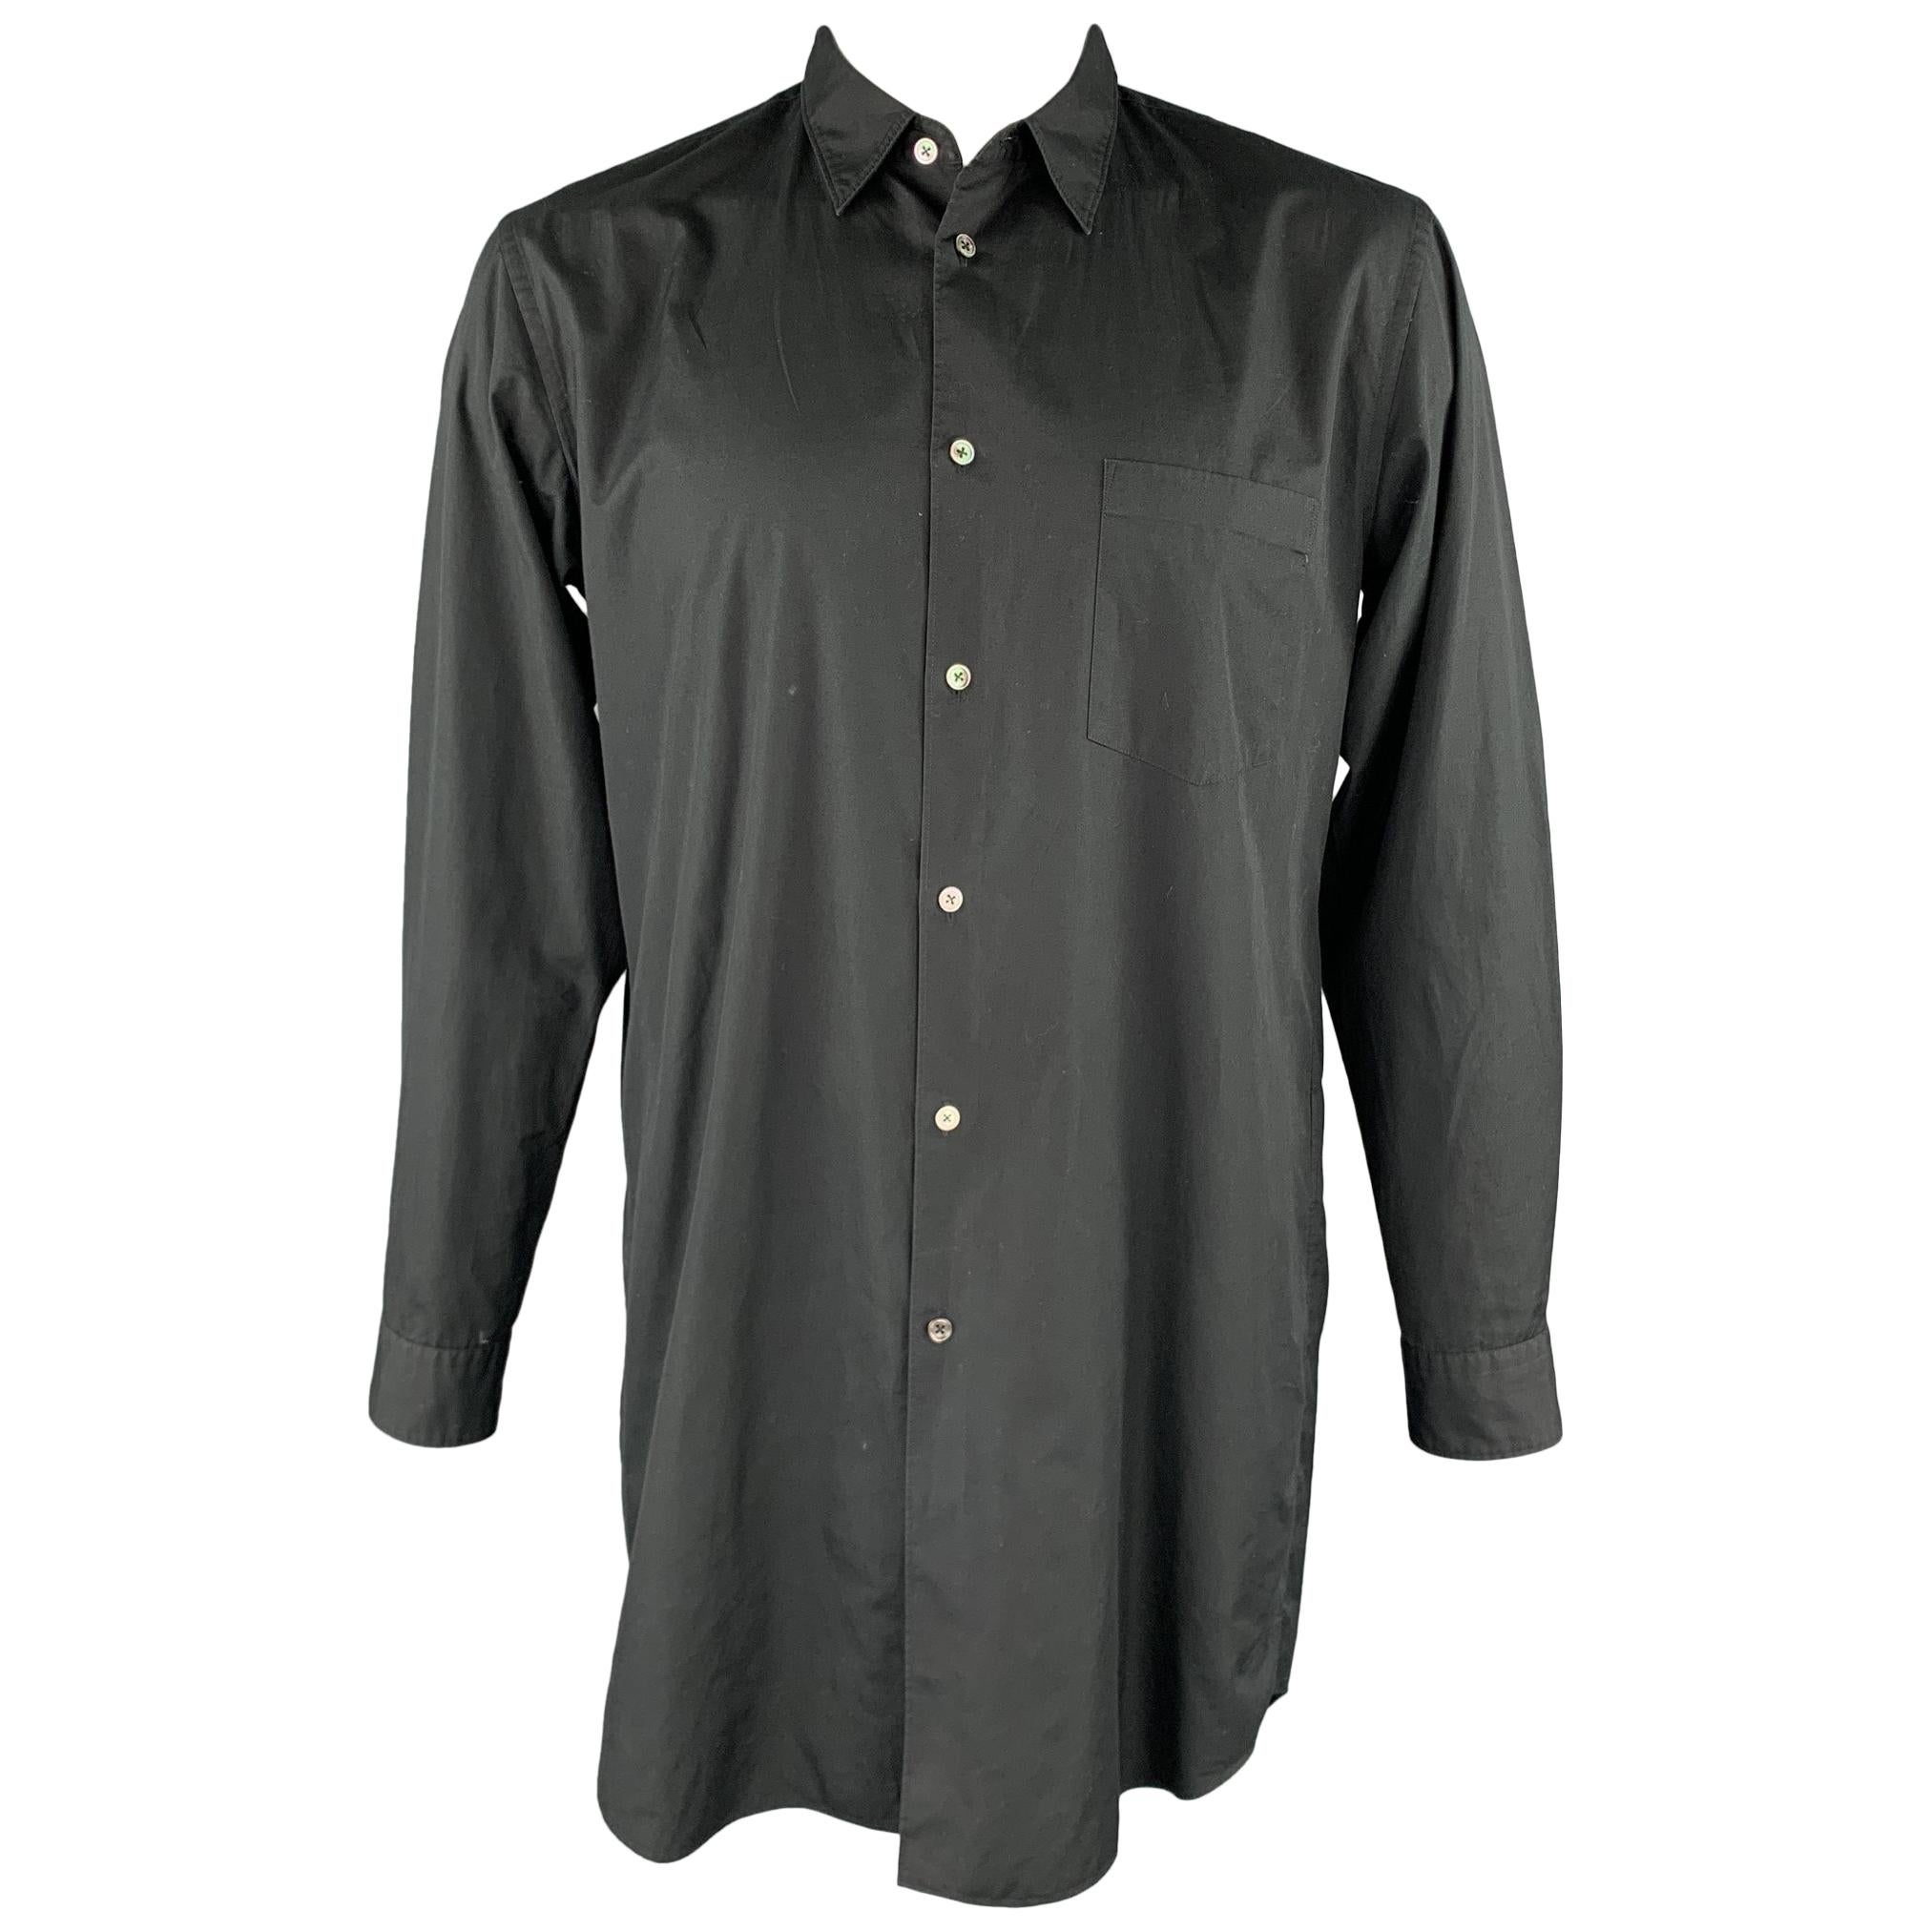 COMME des GARCONS HOMME PLUS Size L Black Cotton Sleeve Shirt